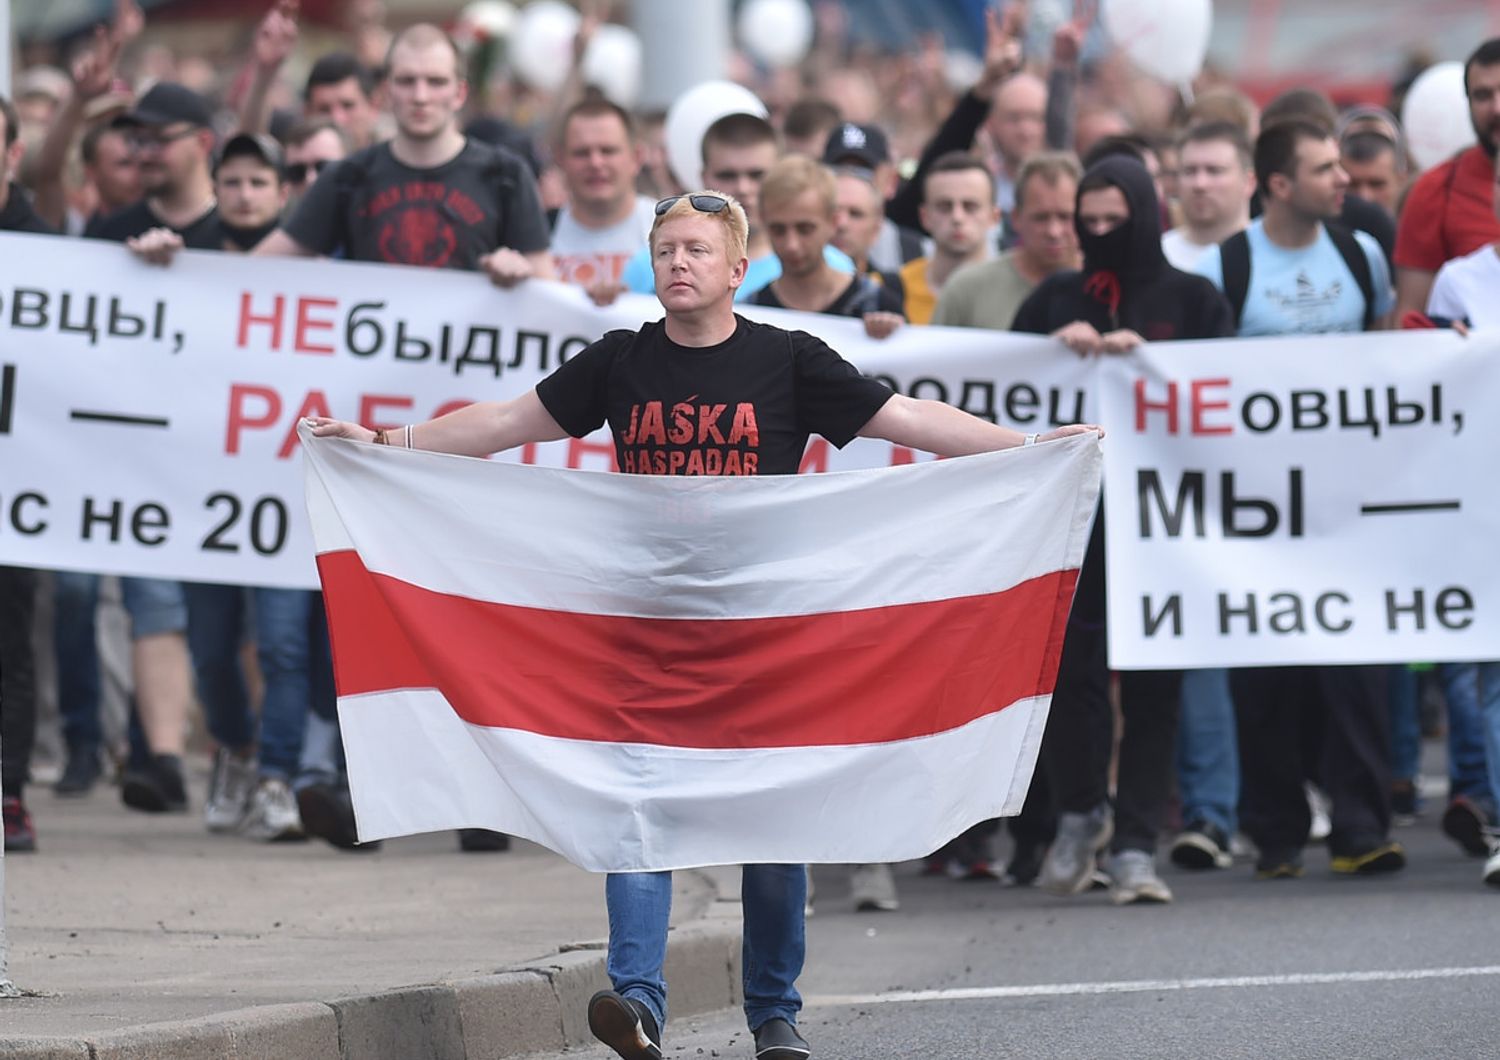 Bielorussia: la manifestazione di protesta contro Lukashenko ieri a Minsk